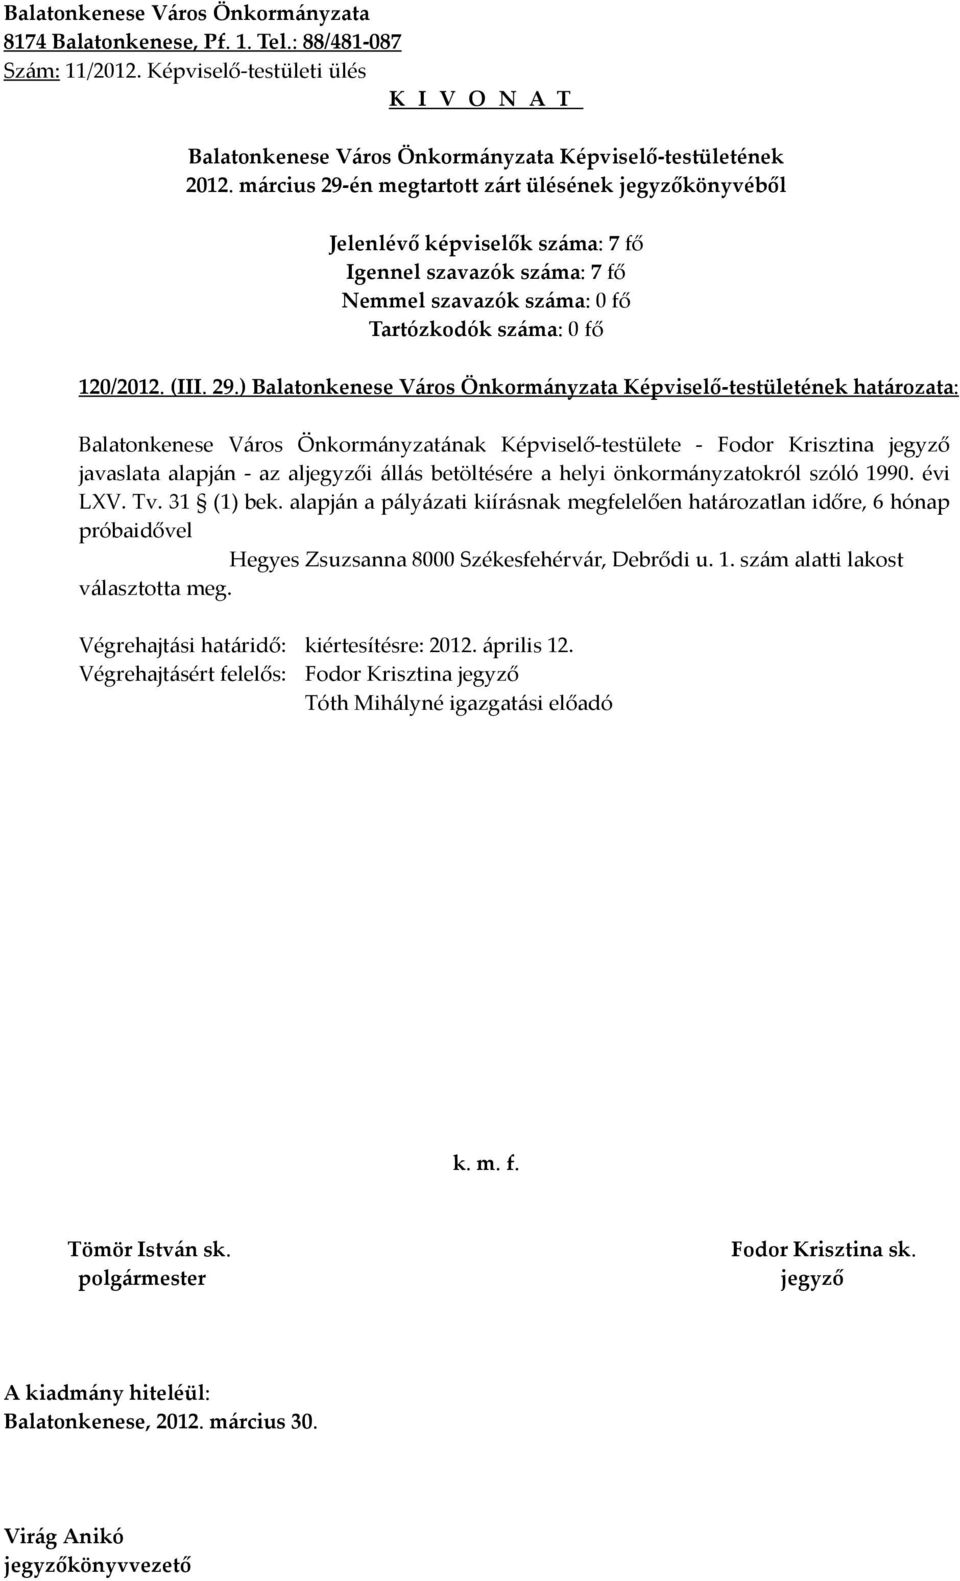 ) határozata: Balatonkenese Város Önkormányzatának Képviselő-testülete - Fodor Krisztina javaslata alapján - az ali állás betöltésére a helyi